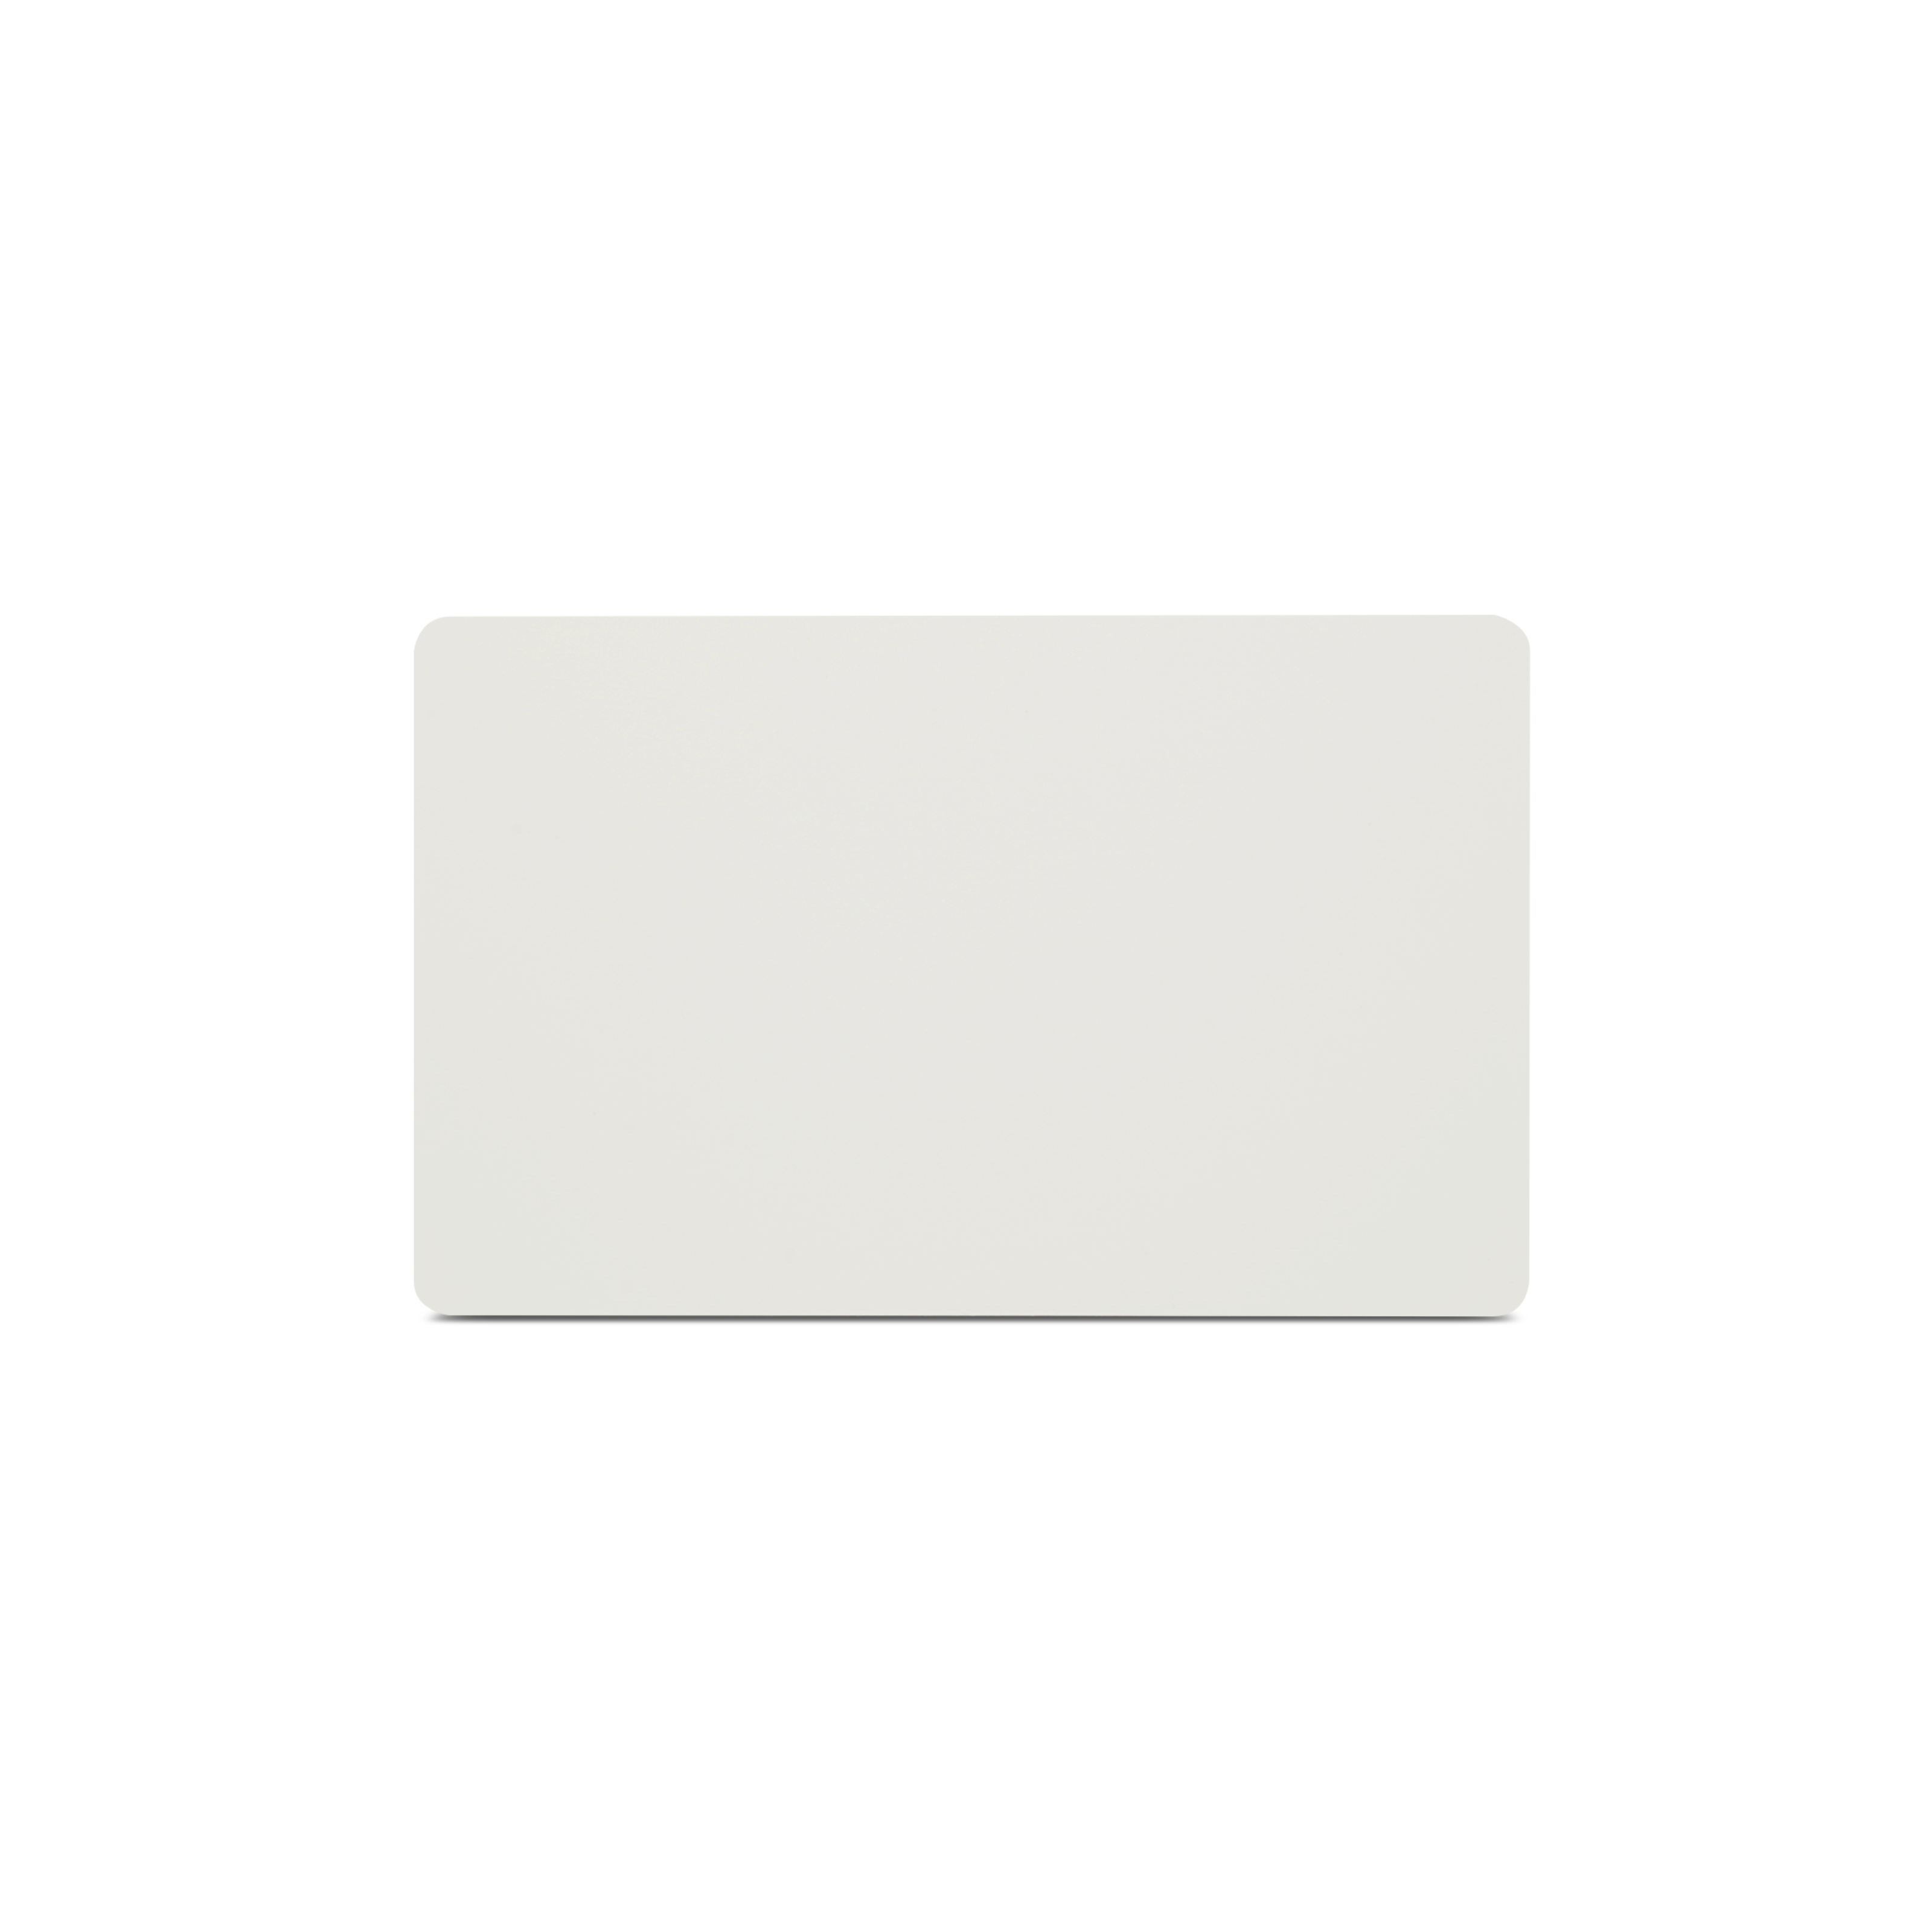 Rückseite NFC Schutzkarte in weiß im ISO-Format